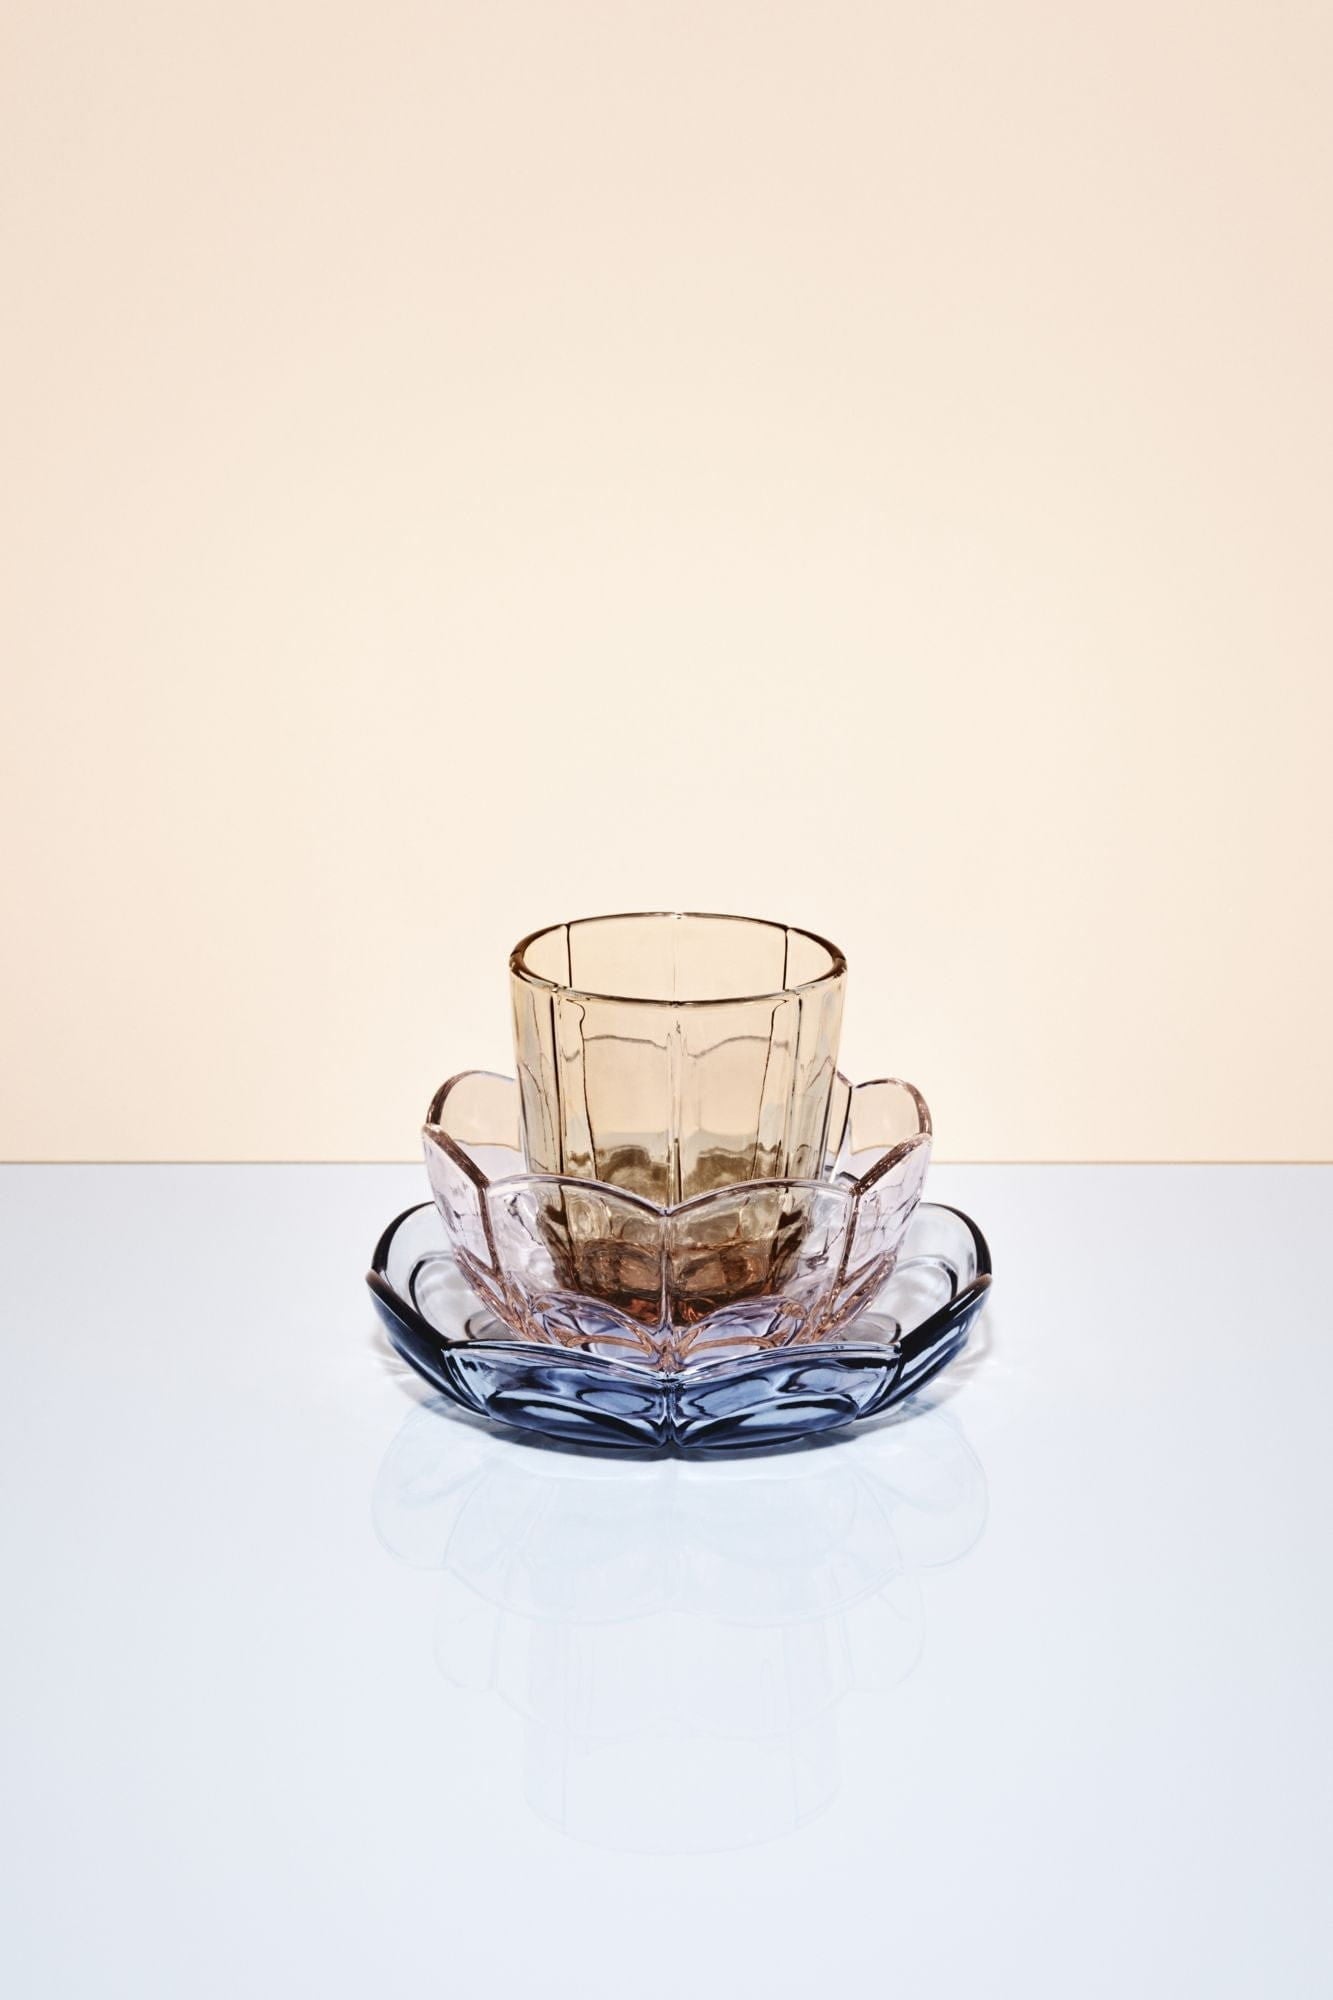 Holmegaard Lily Water Glass Set van 2 320 ml, bruin